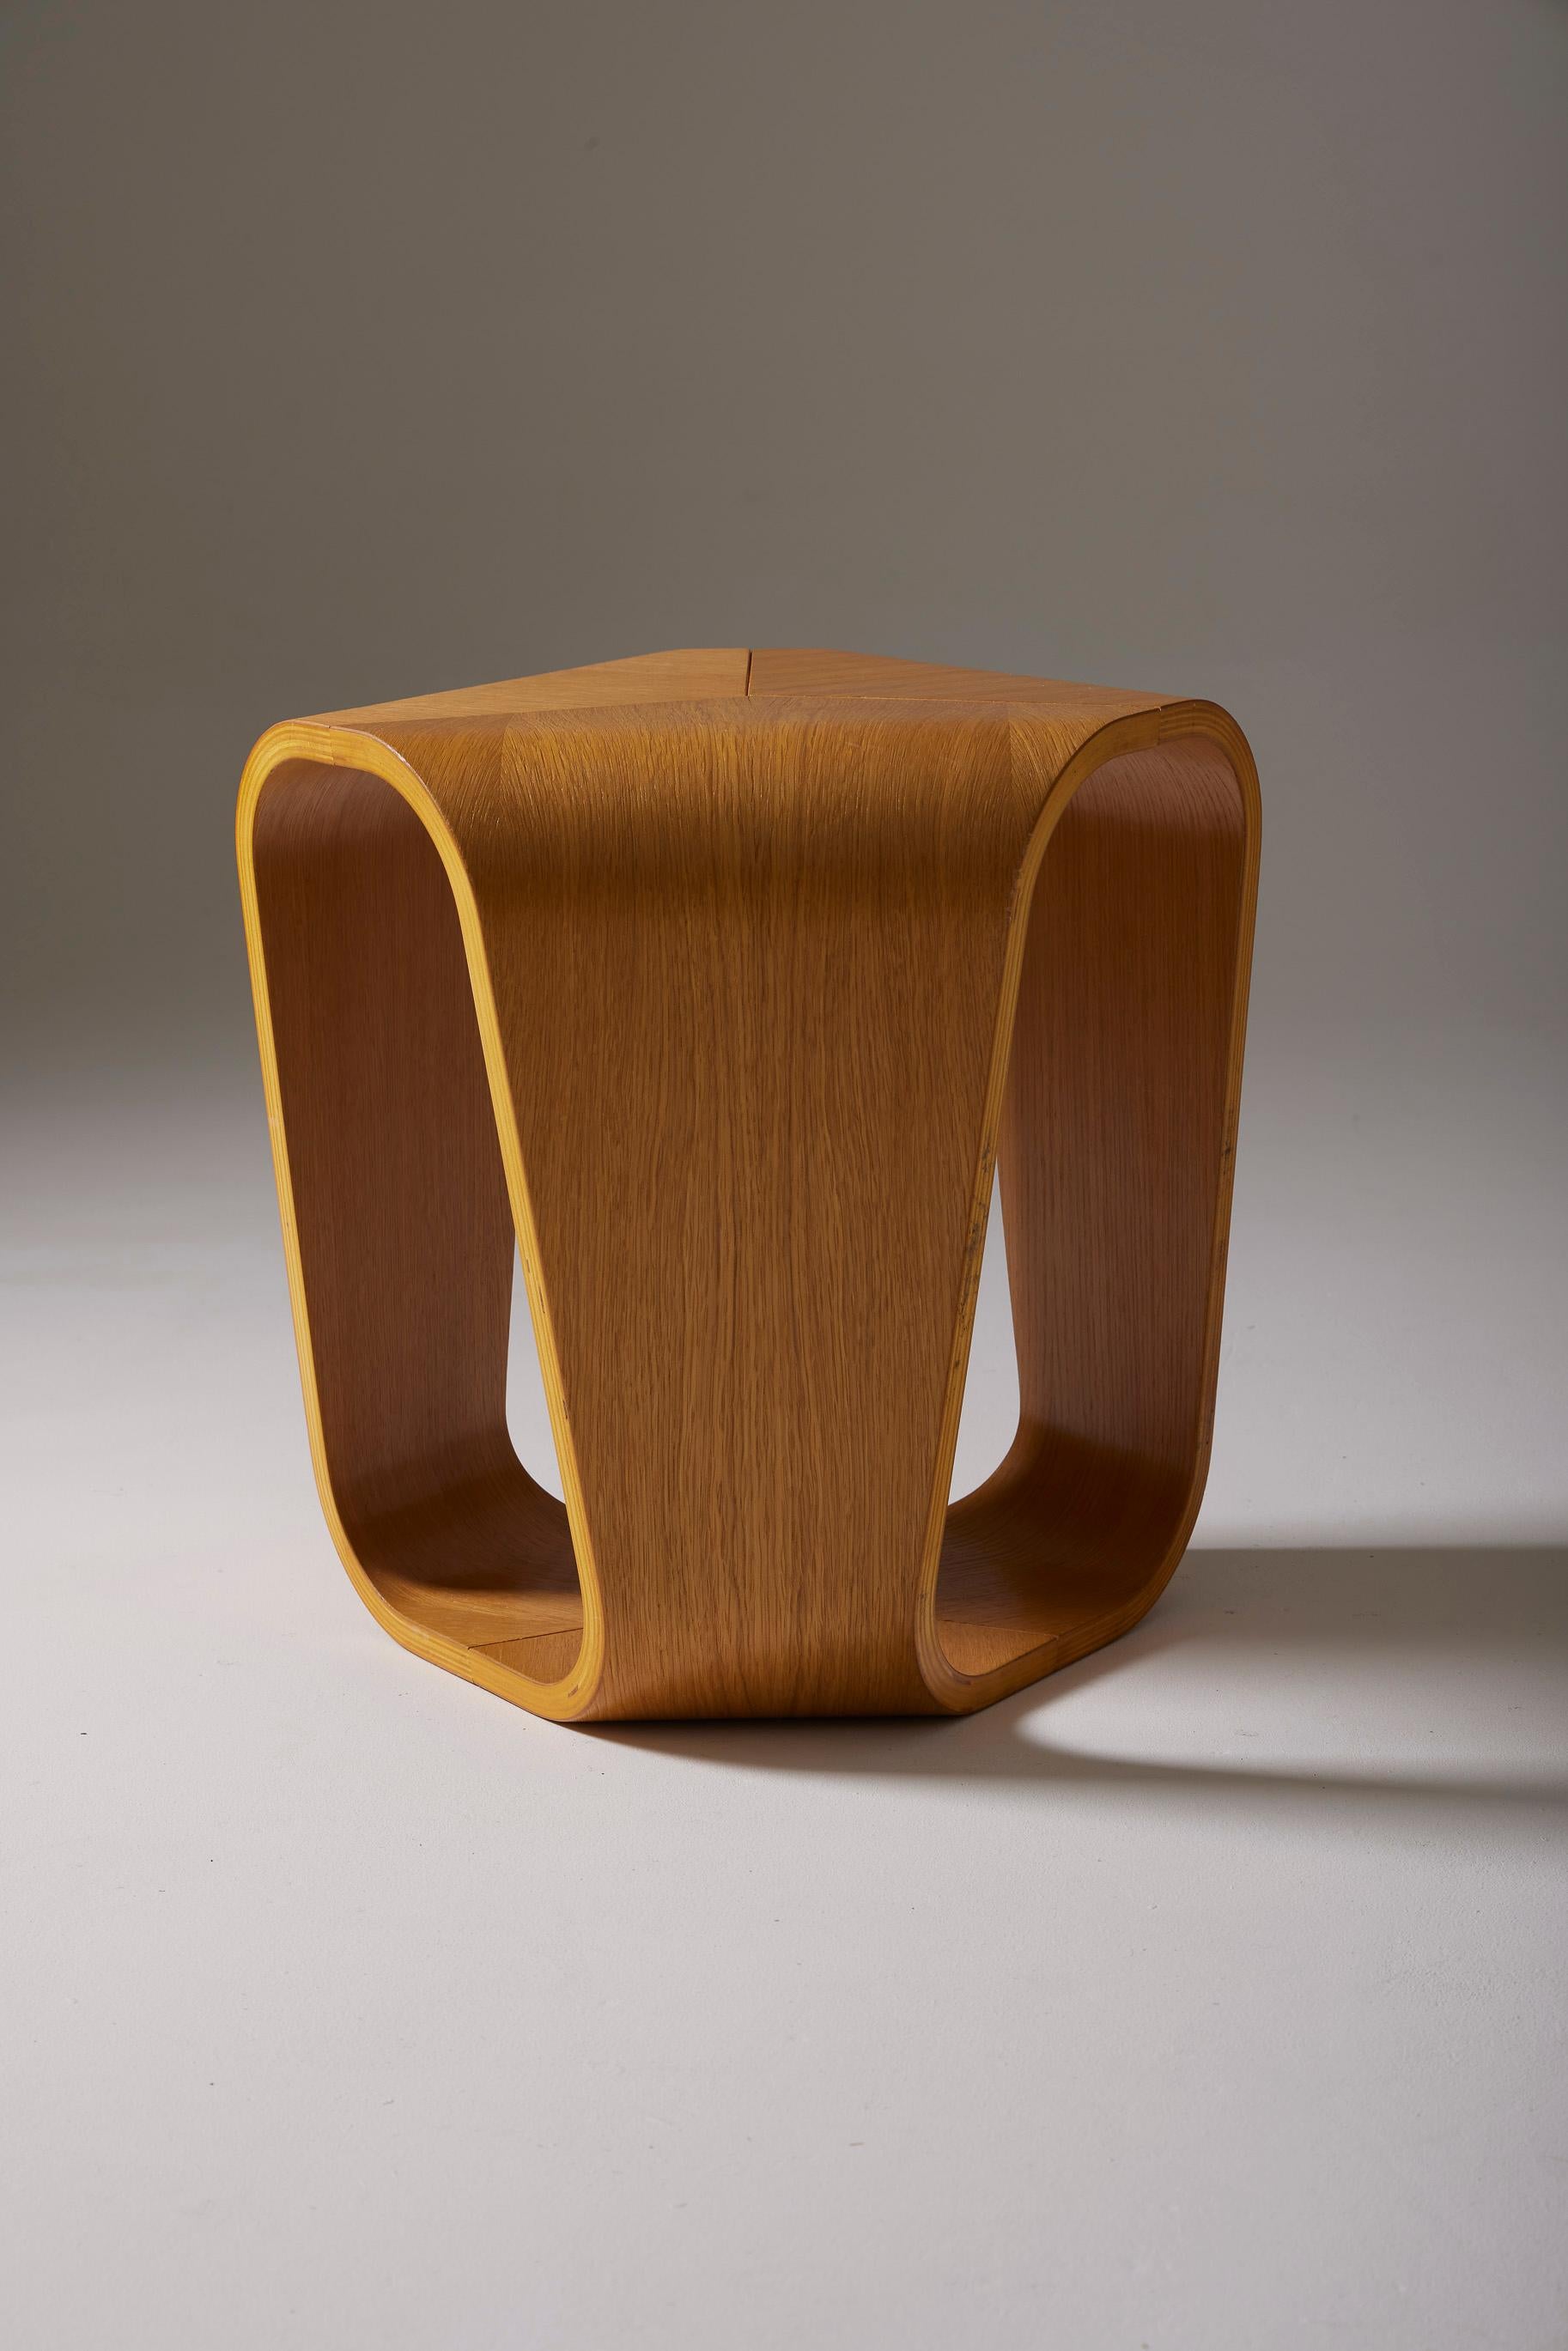 Holzhocker oder Beistelltisch des italienischen Designers Enrico Cesana für Busnelli aus den 1990er Jahren. Das Design dieses Hockers erinnert an den Geschmack der 1970er Jahre und lässt die Anklänge an die Ära des Space-Age-Designs wieder aufleben.